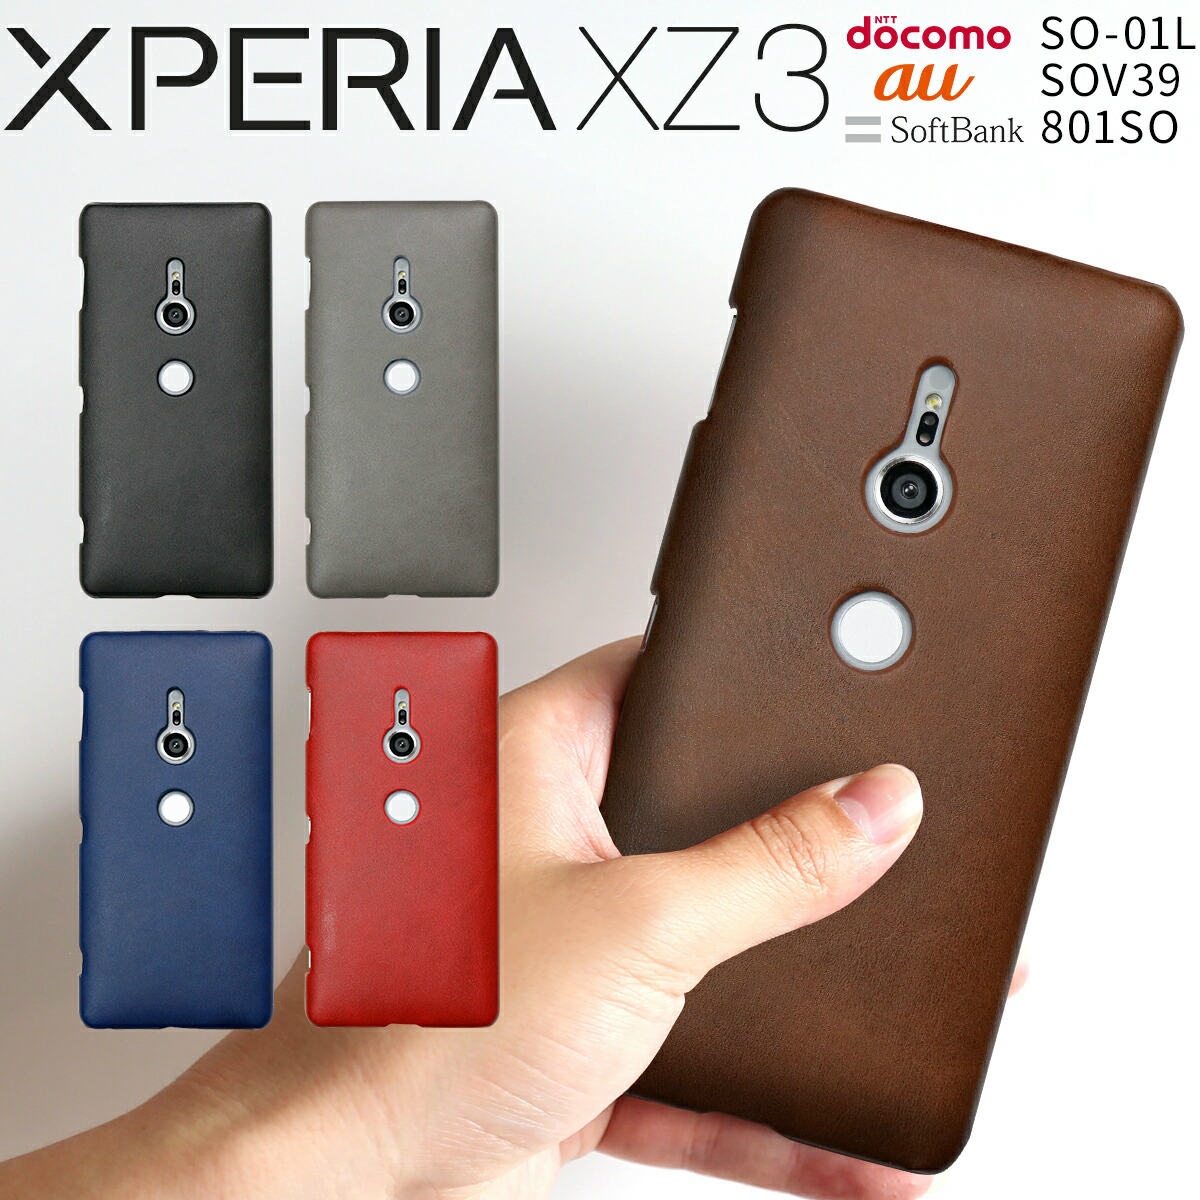  Xperia XZ3 ケース カバー スマホケース 韓国 SO-01L SOV39 801SO スマホ レザー ハードケース エックスゼット3 エクスペリア スマートフォン 革 かっこいい おしゃれ 人気 おすすめ docomo au 送料無料 携帯 携帯ケース 合皮 sale